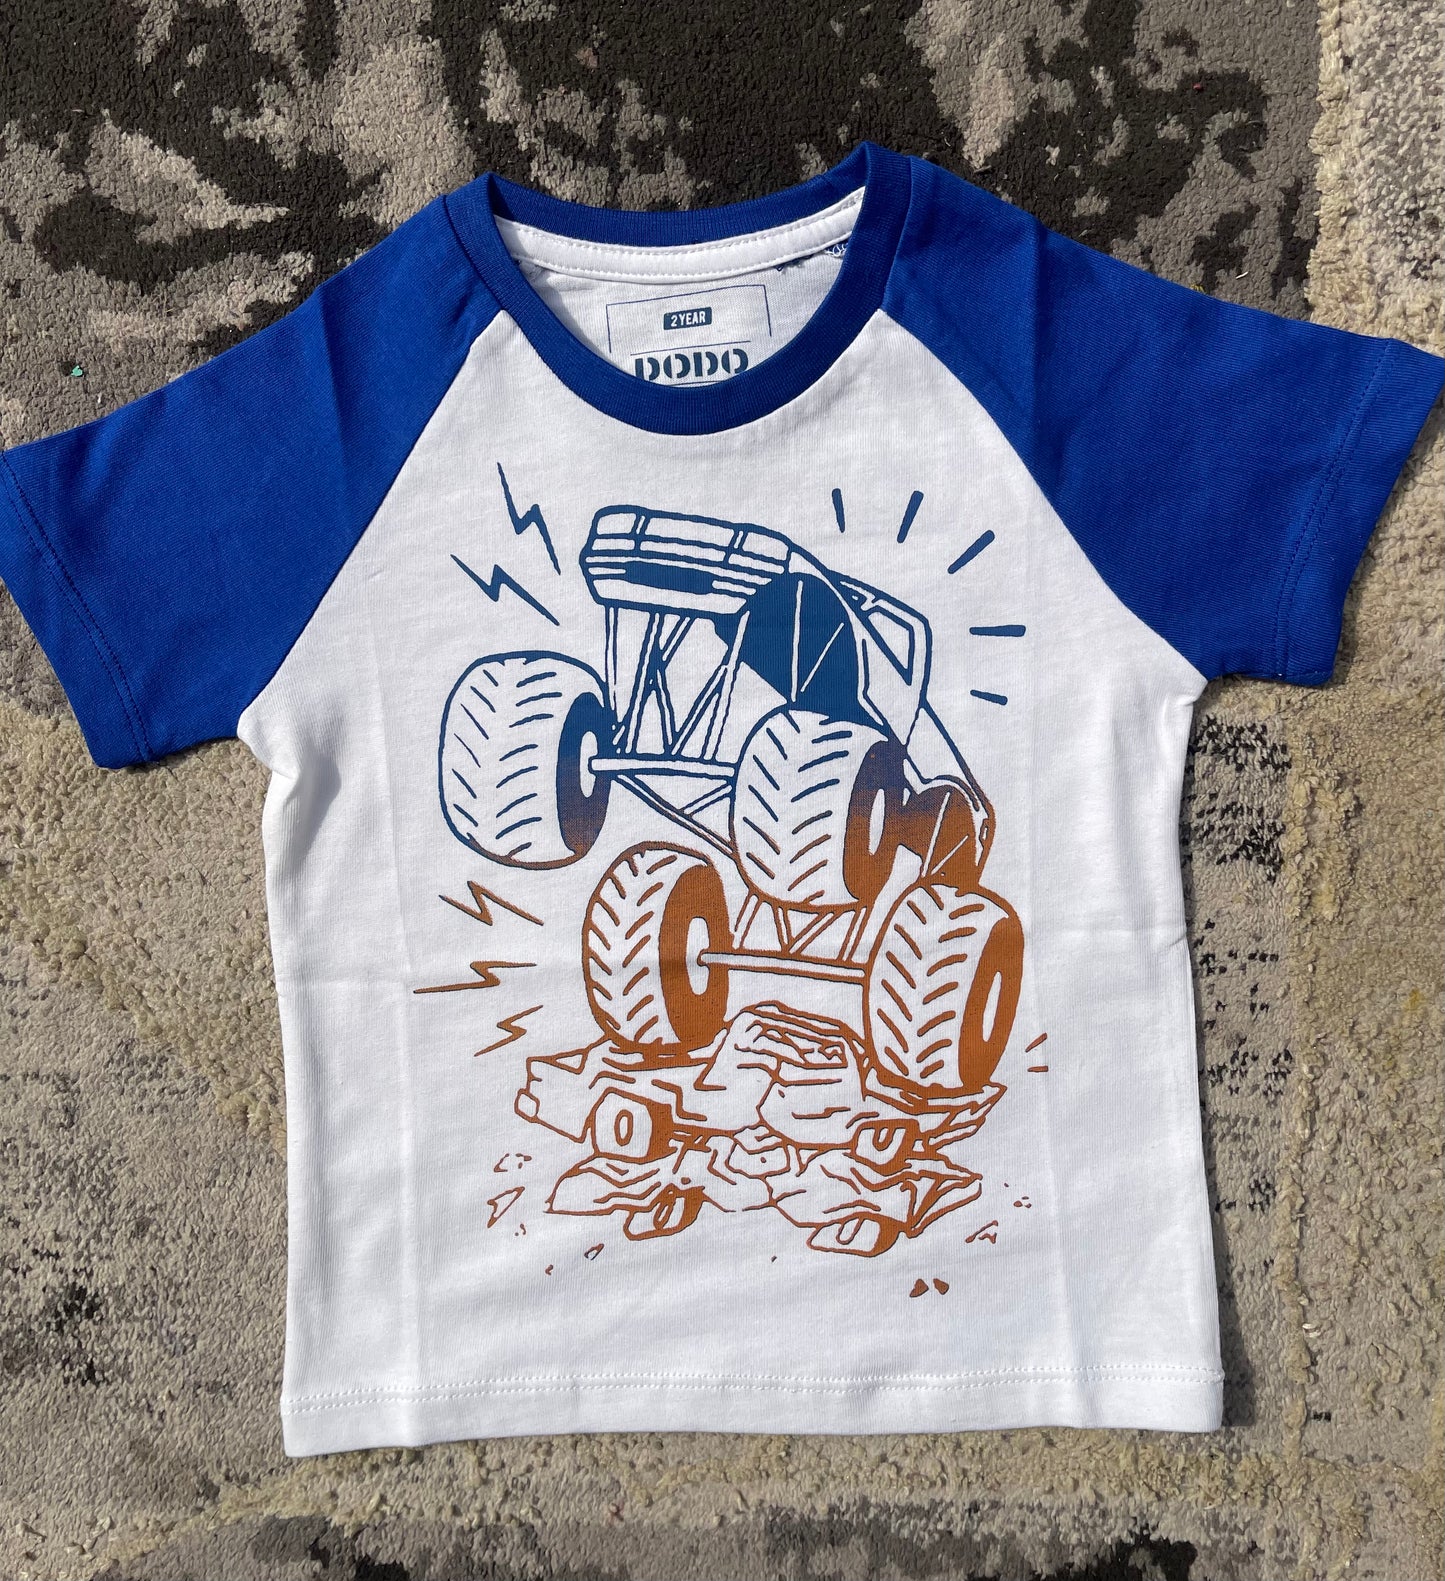 Monster Truck T-Shirt